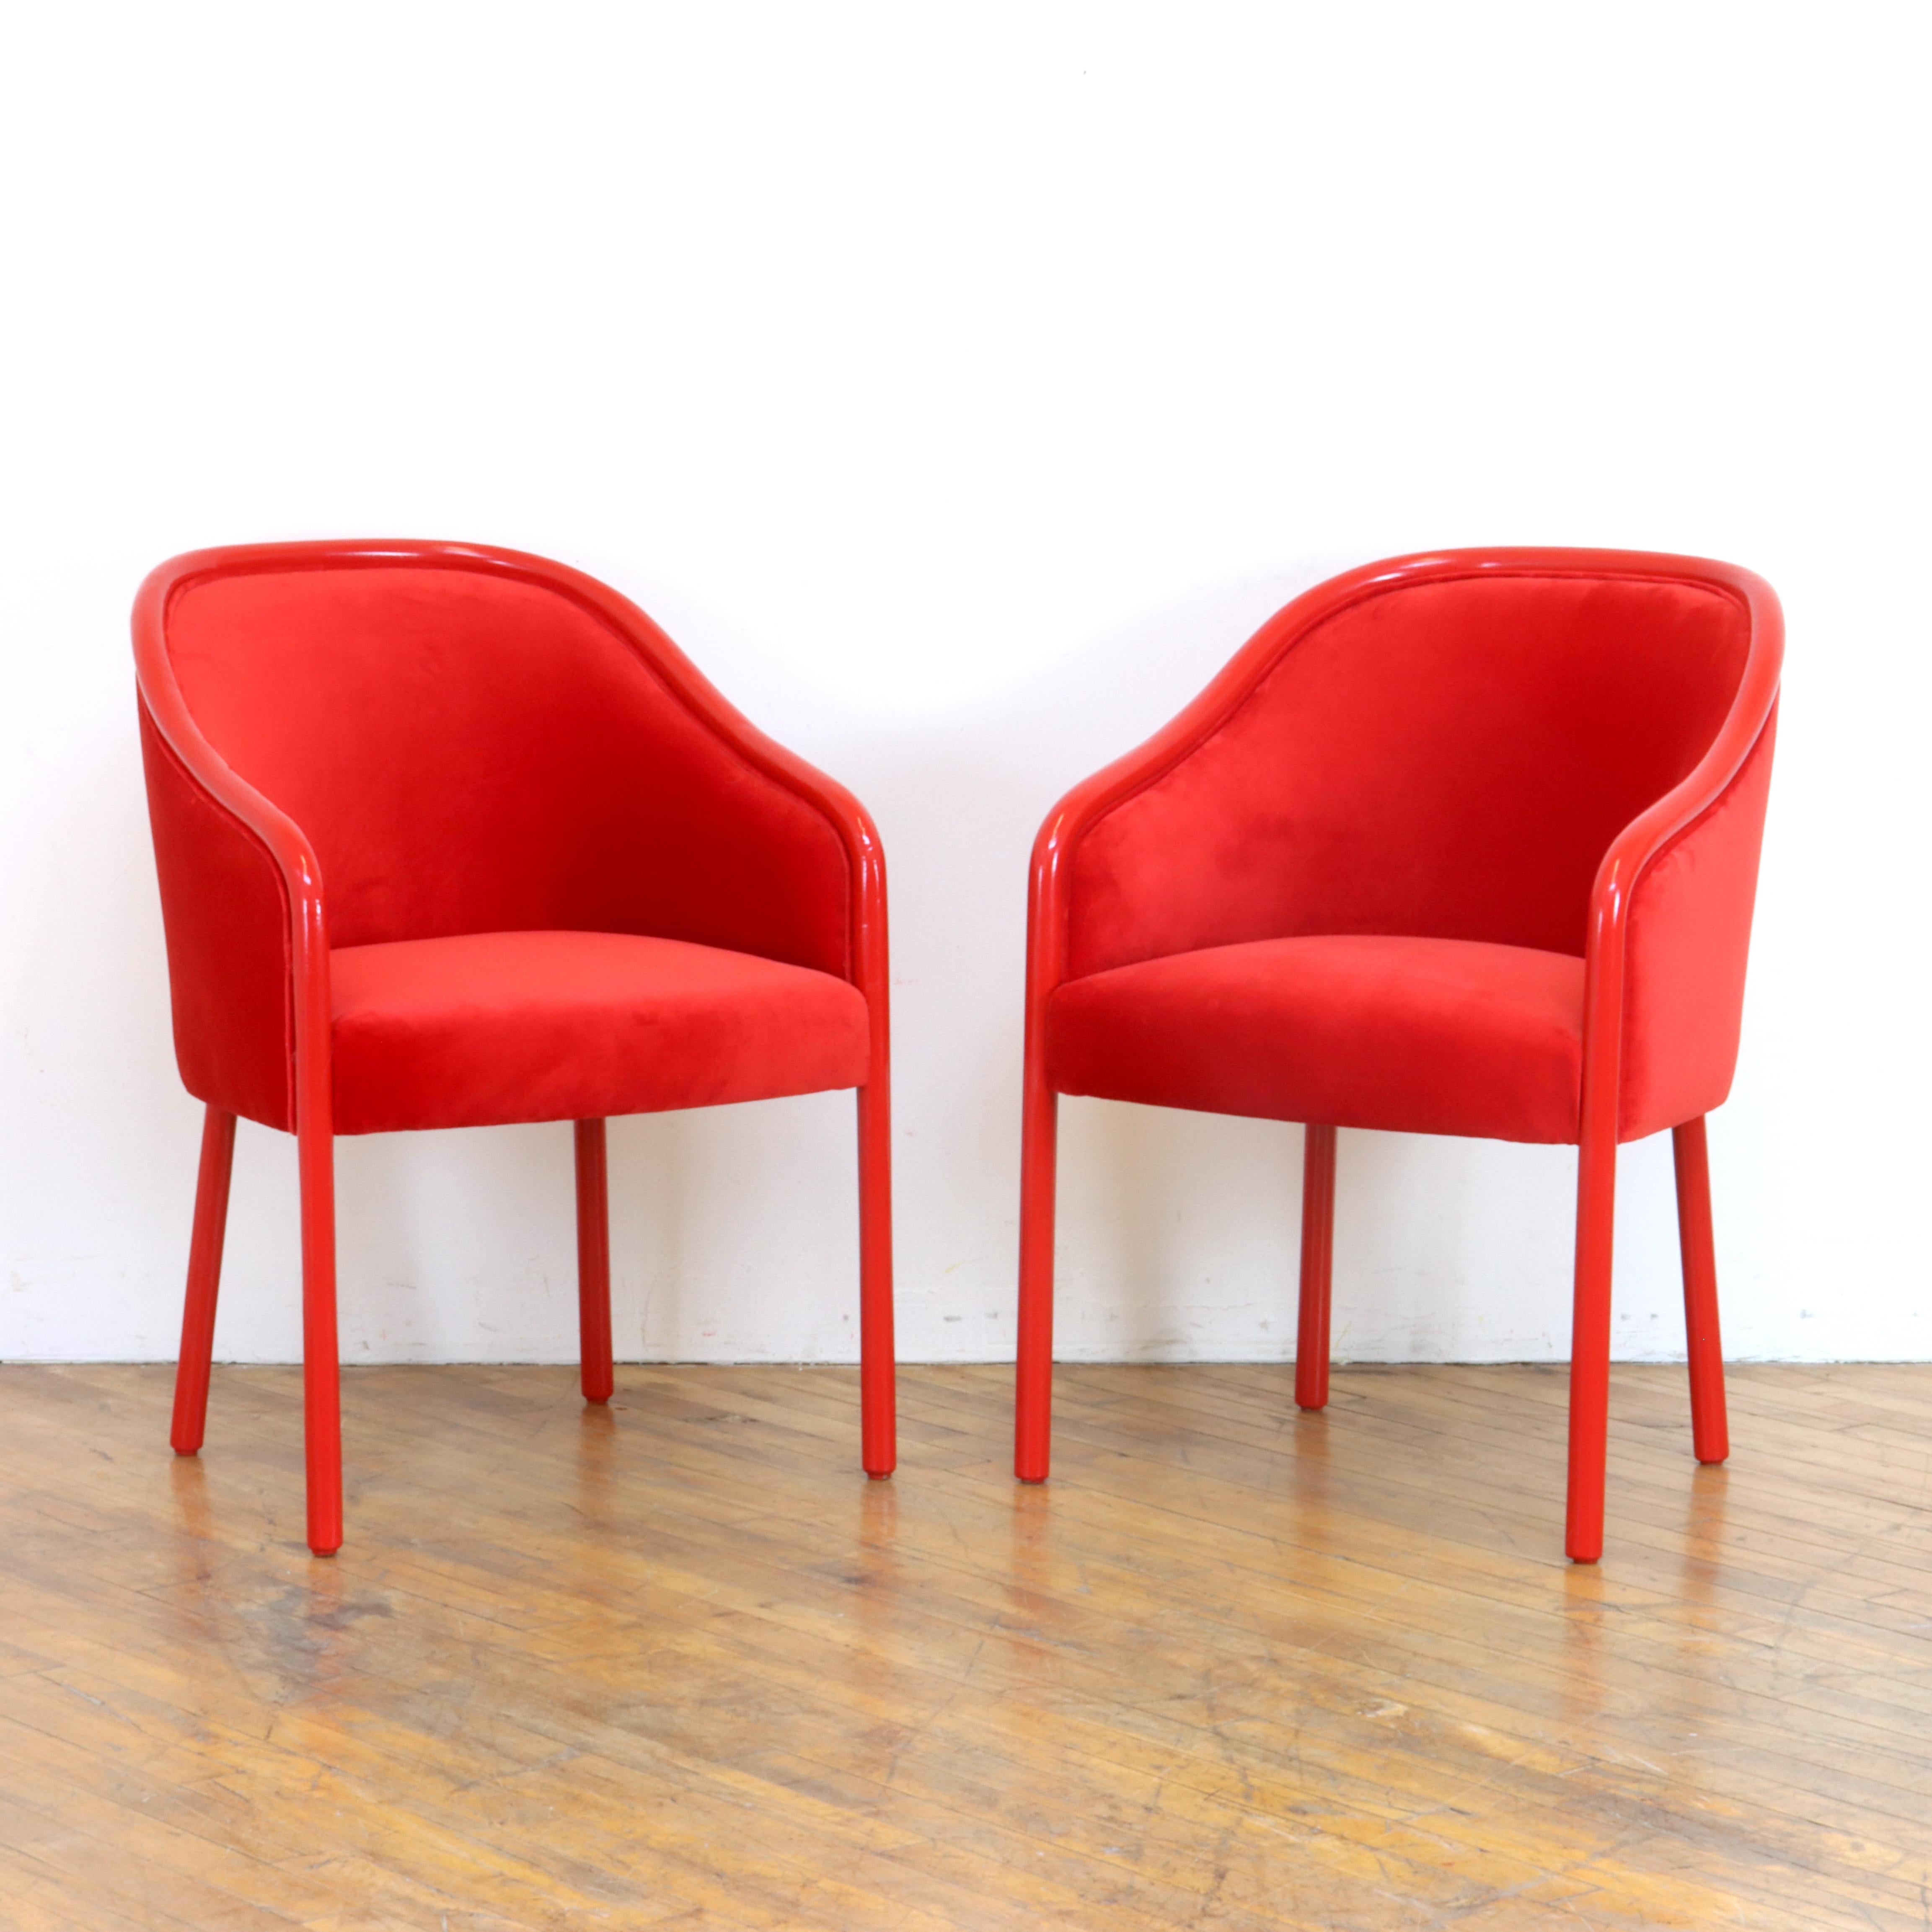 Réalisez vos rêves monochromes avec cette jolie paire de chaises vintage Ward Bennett Barrel personnalisées pour Brickel Associates. Les cadres en frêne ont été repeints à l'émail et recouverts de velours rouge.  

Ward Bennett était un designer et